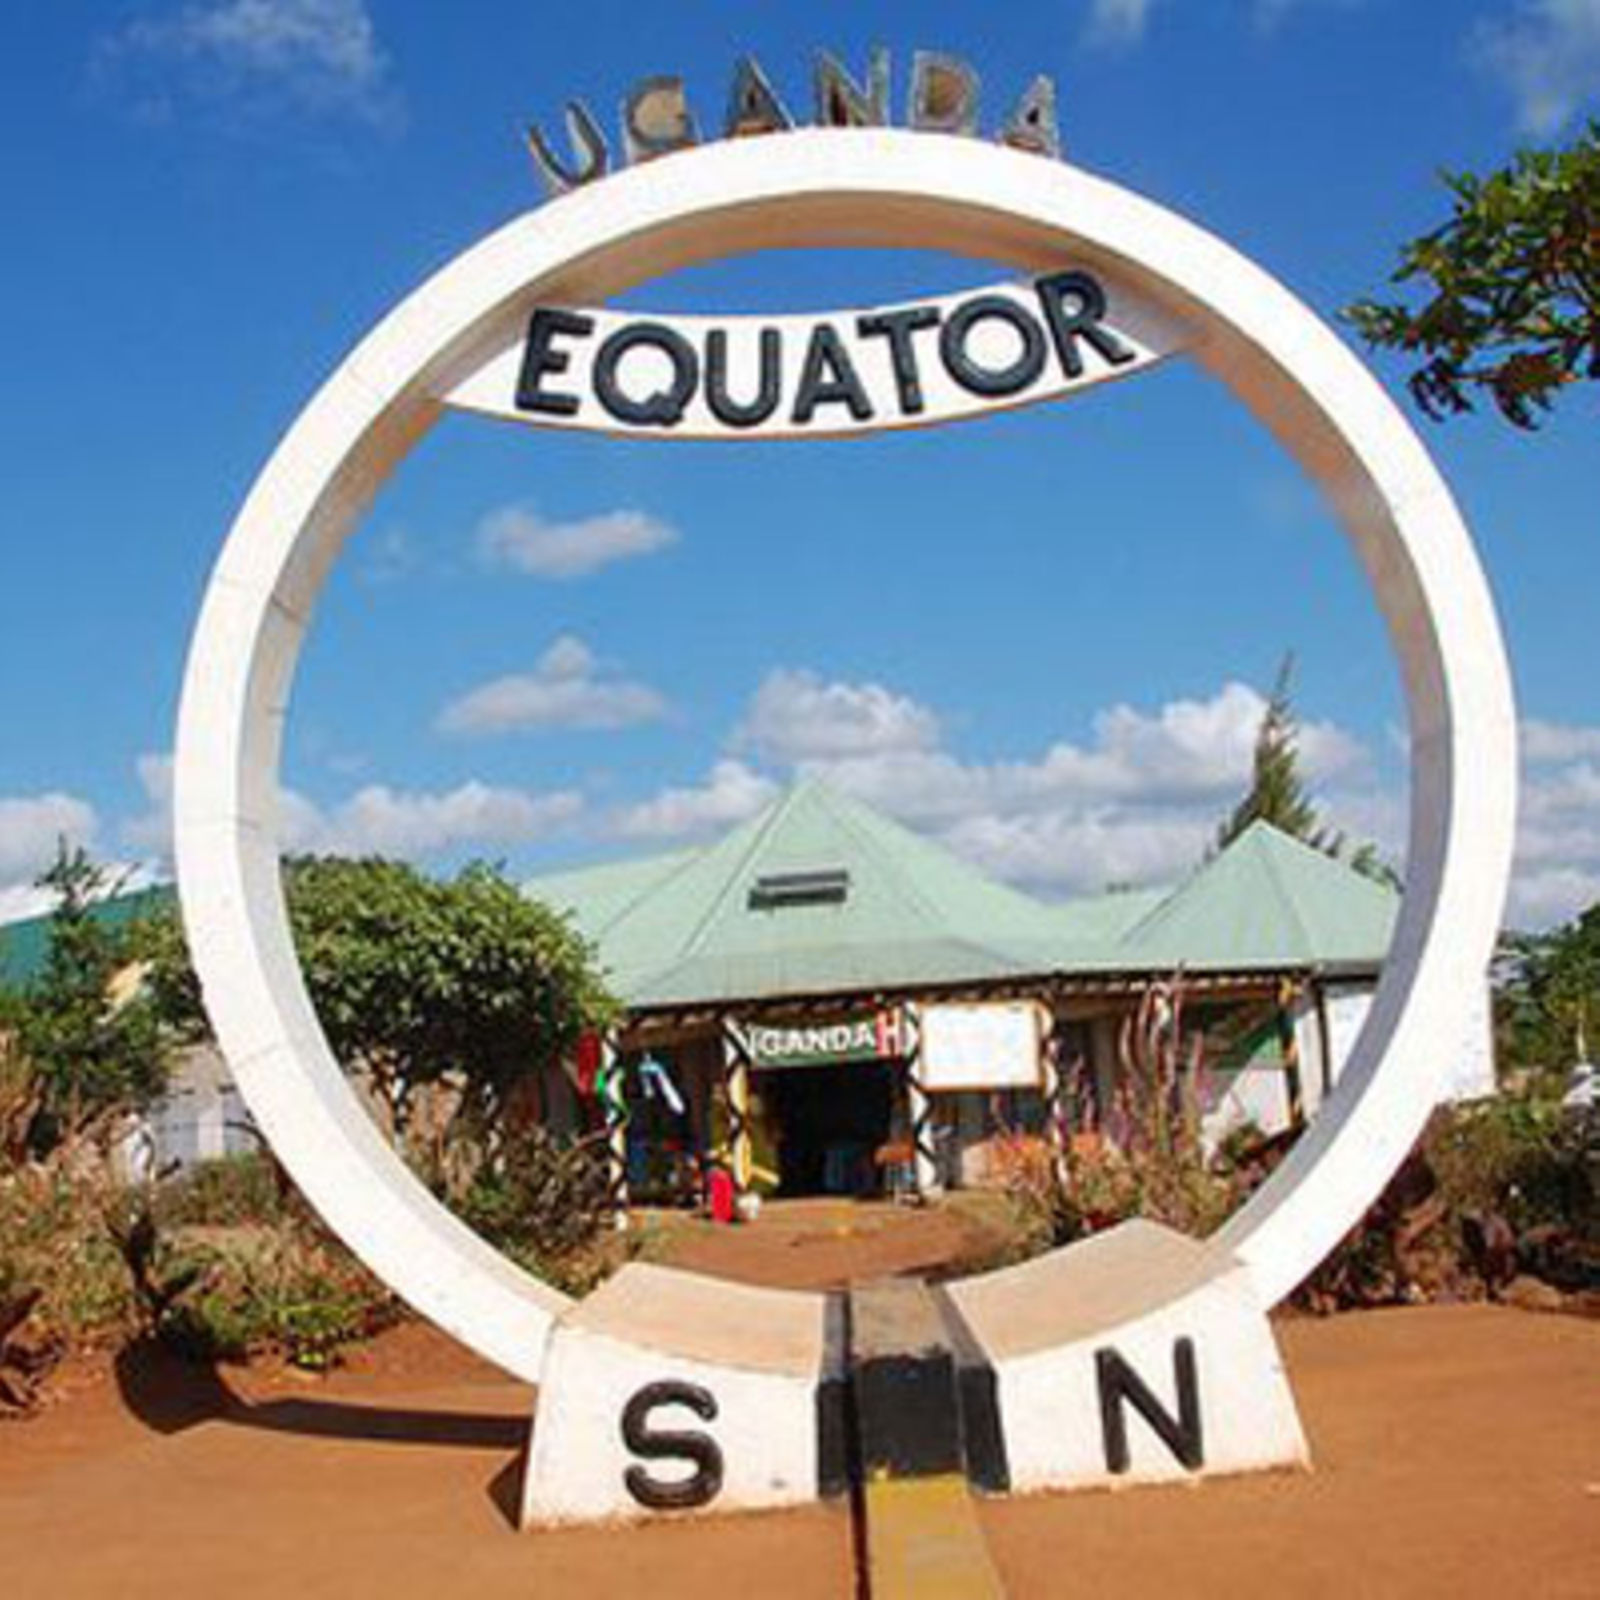 Uganda equator 